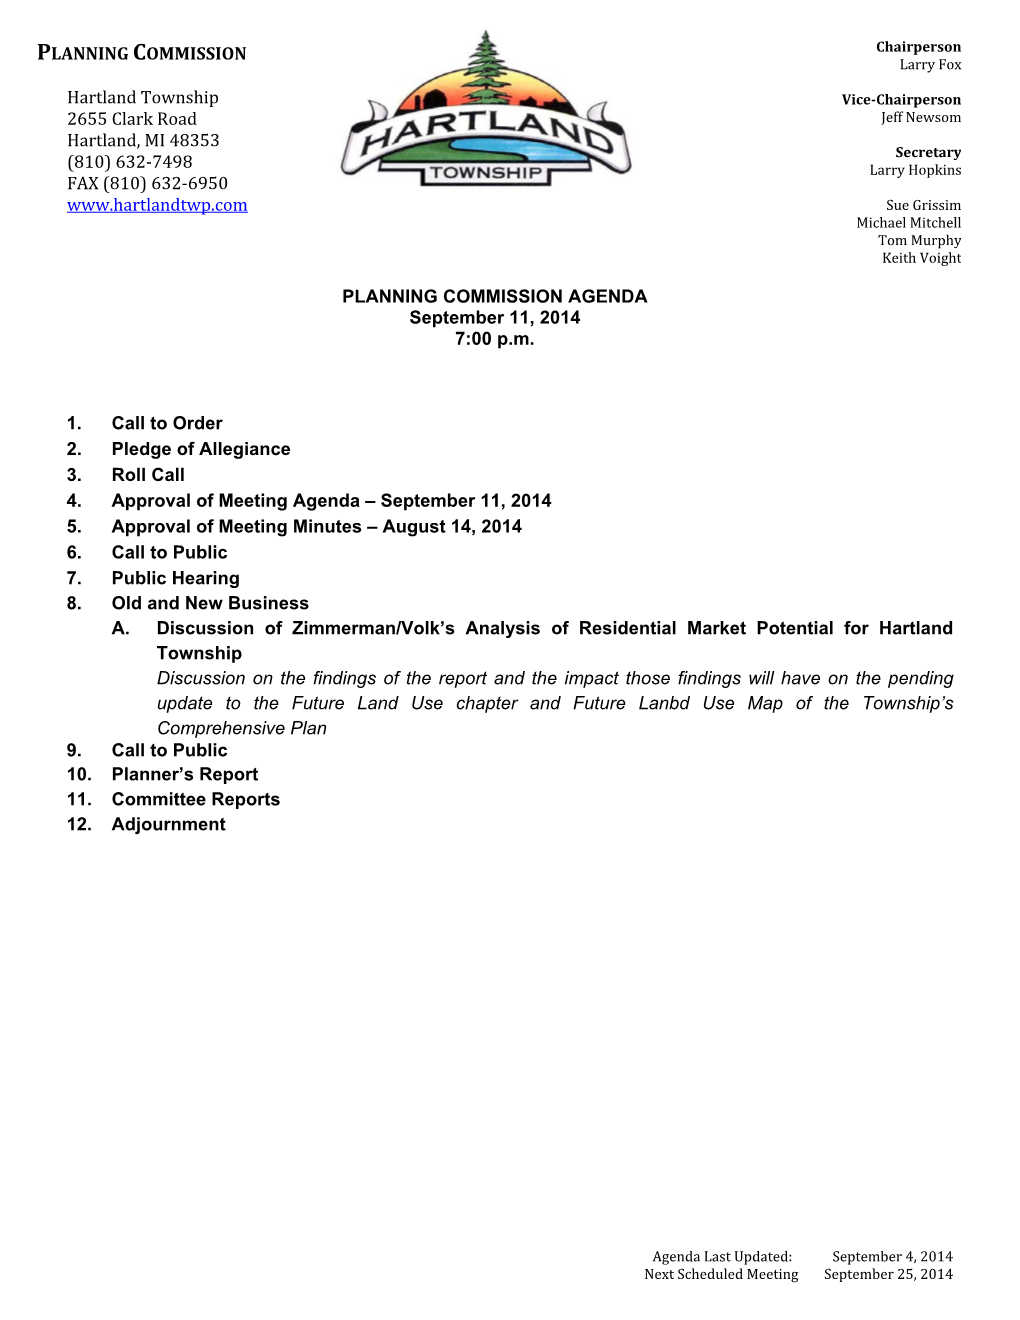 PLANNING COMMISSION AGENDA September 11, 2014 7:00 P.M. 1